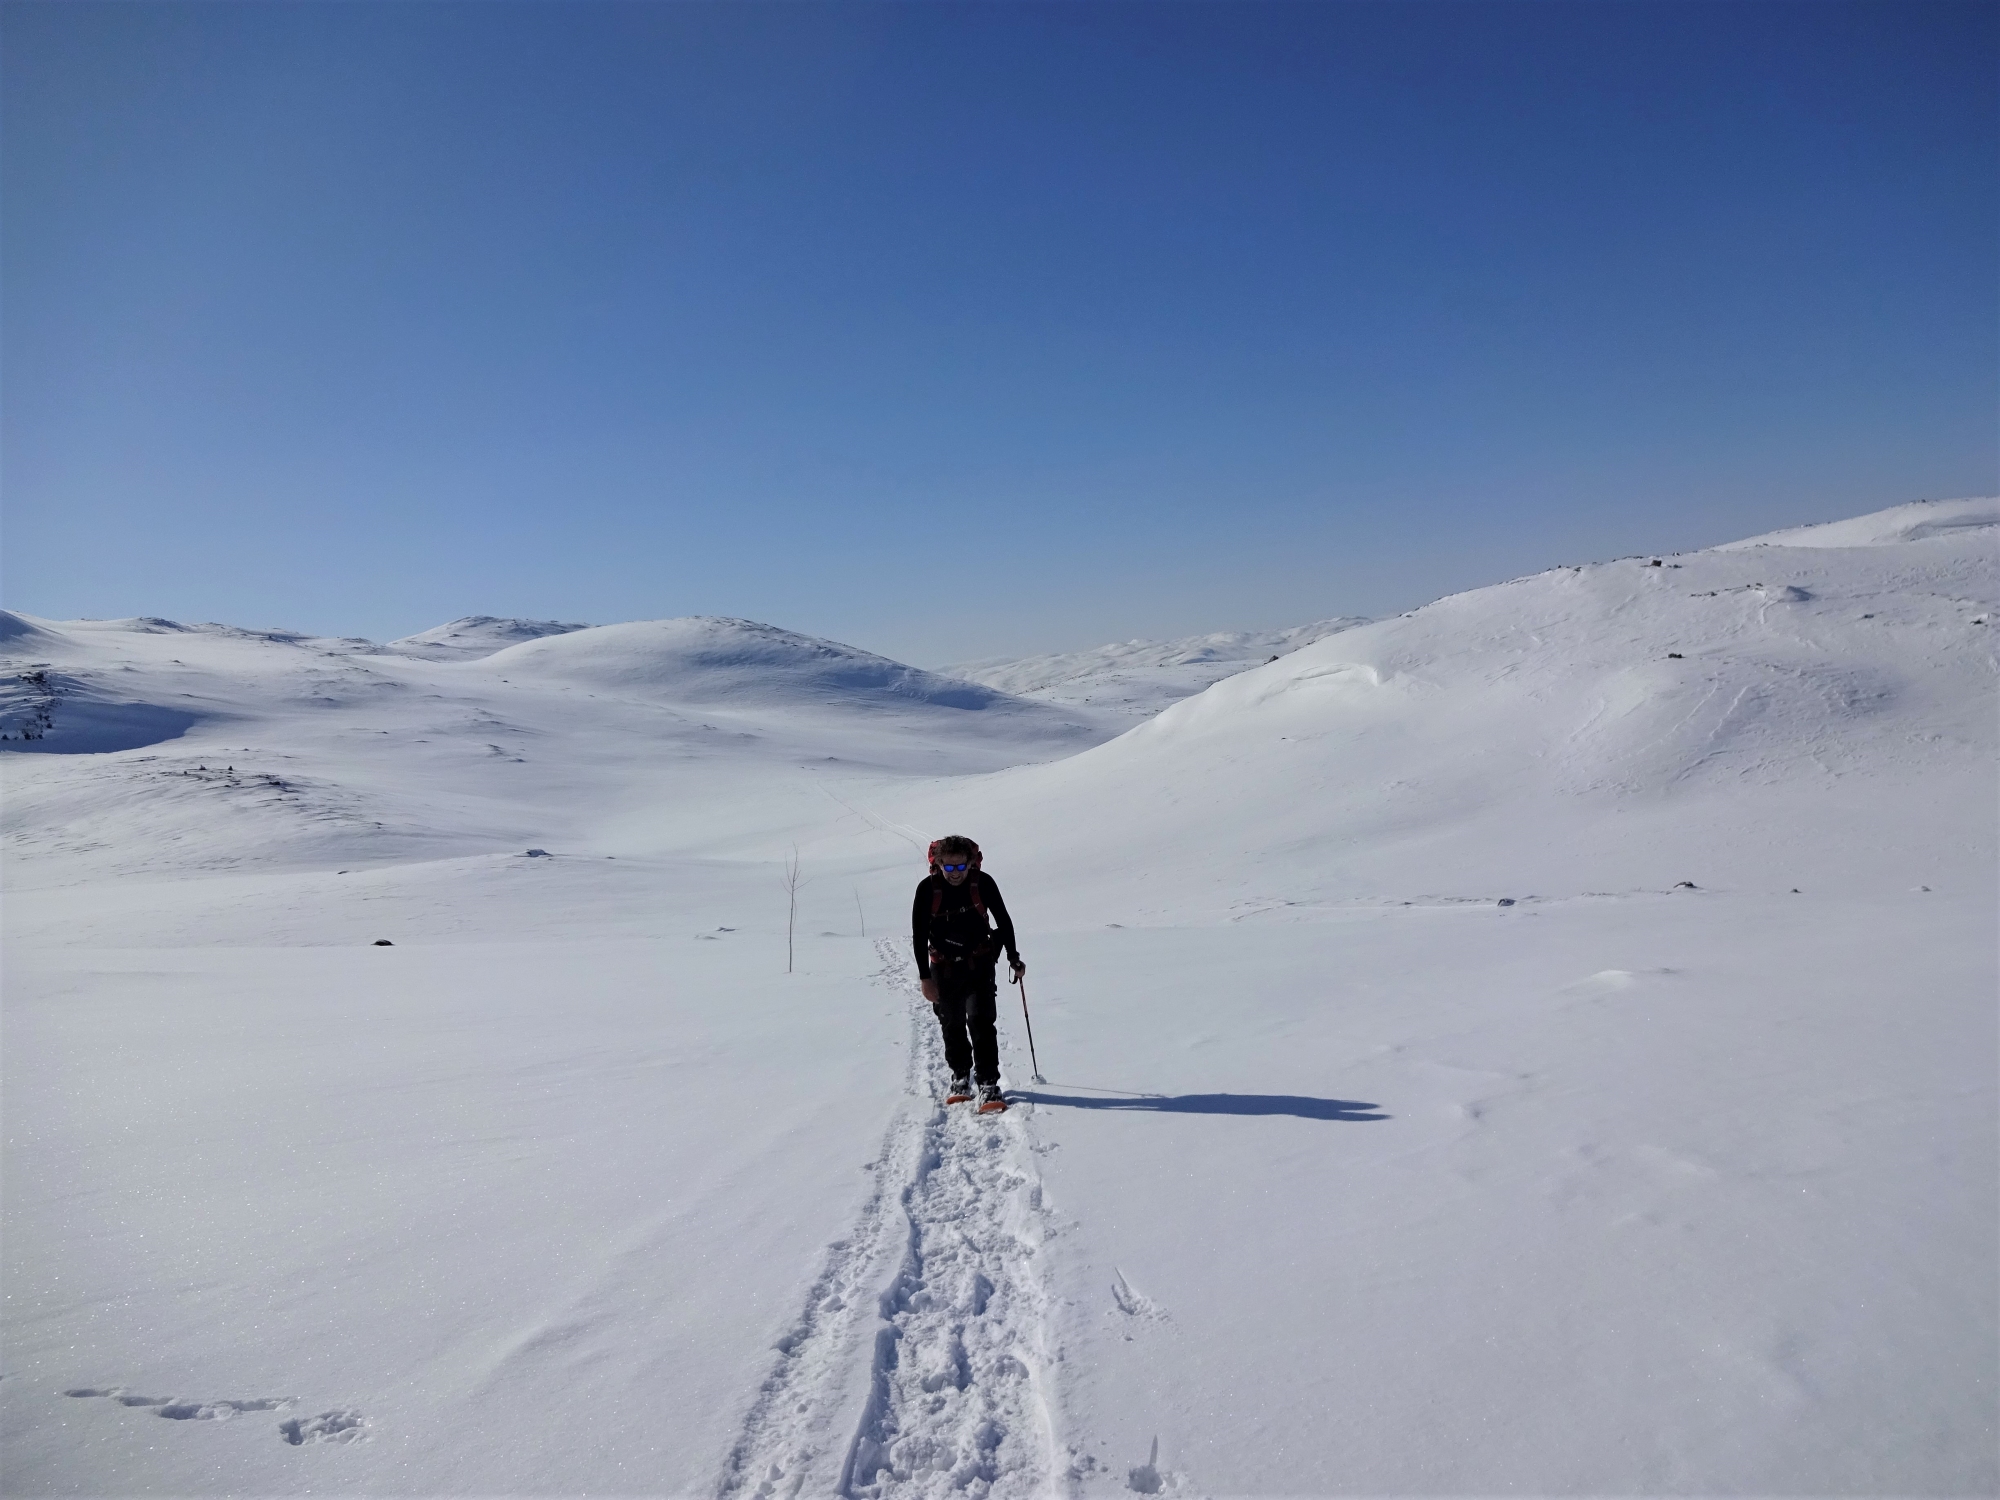 Eenzame hiker op weg naar DNT-hut in Noorwegen.